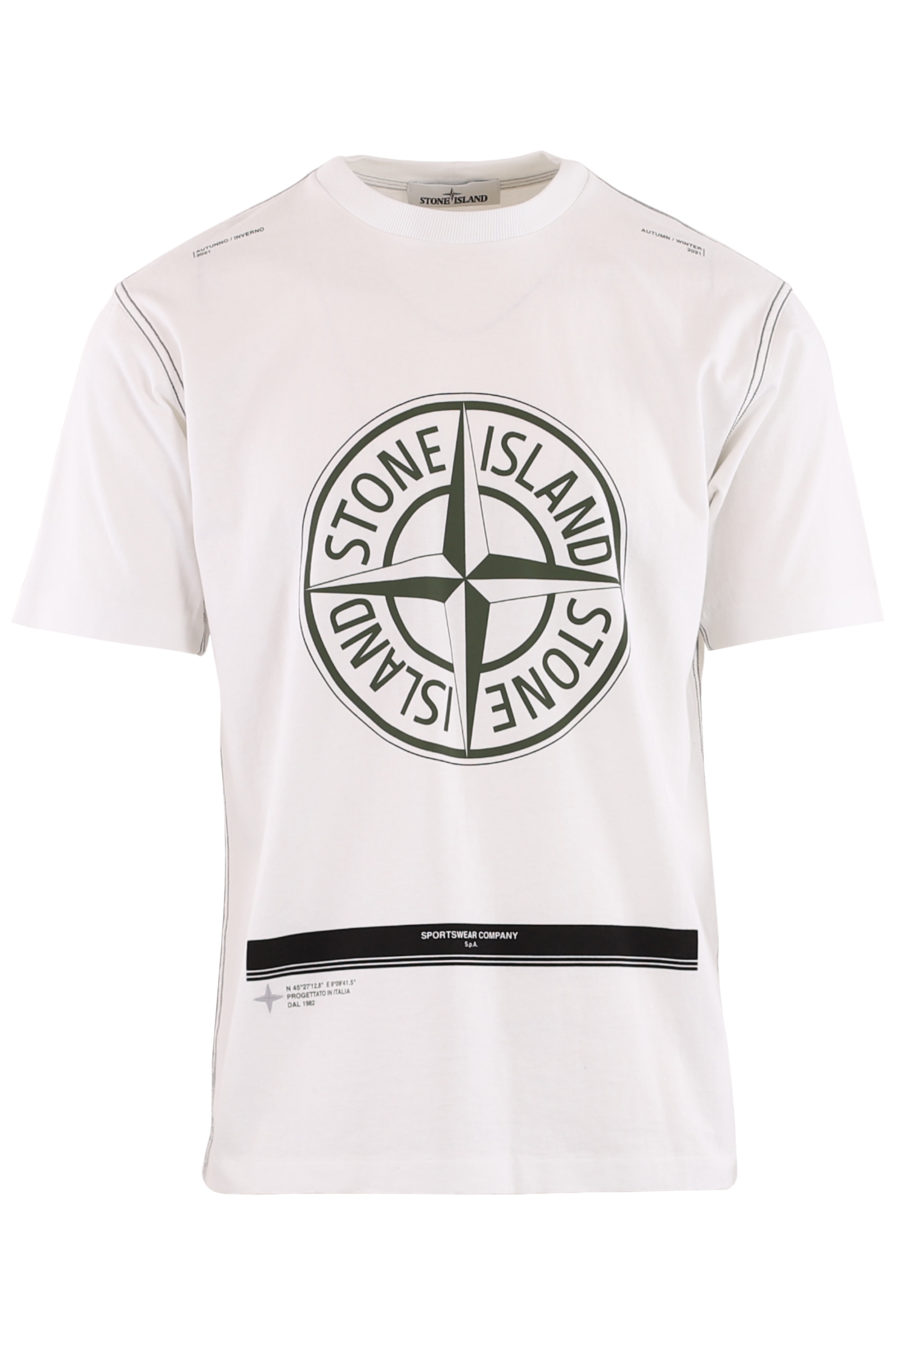 Weißes T-Shirt mit großem Logodruck und grünen Streifen - 8cfa76586706993a5d33a764d98fd7639bcb6edb